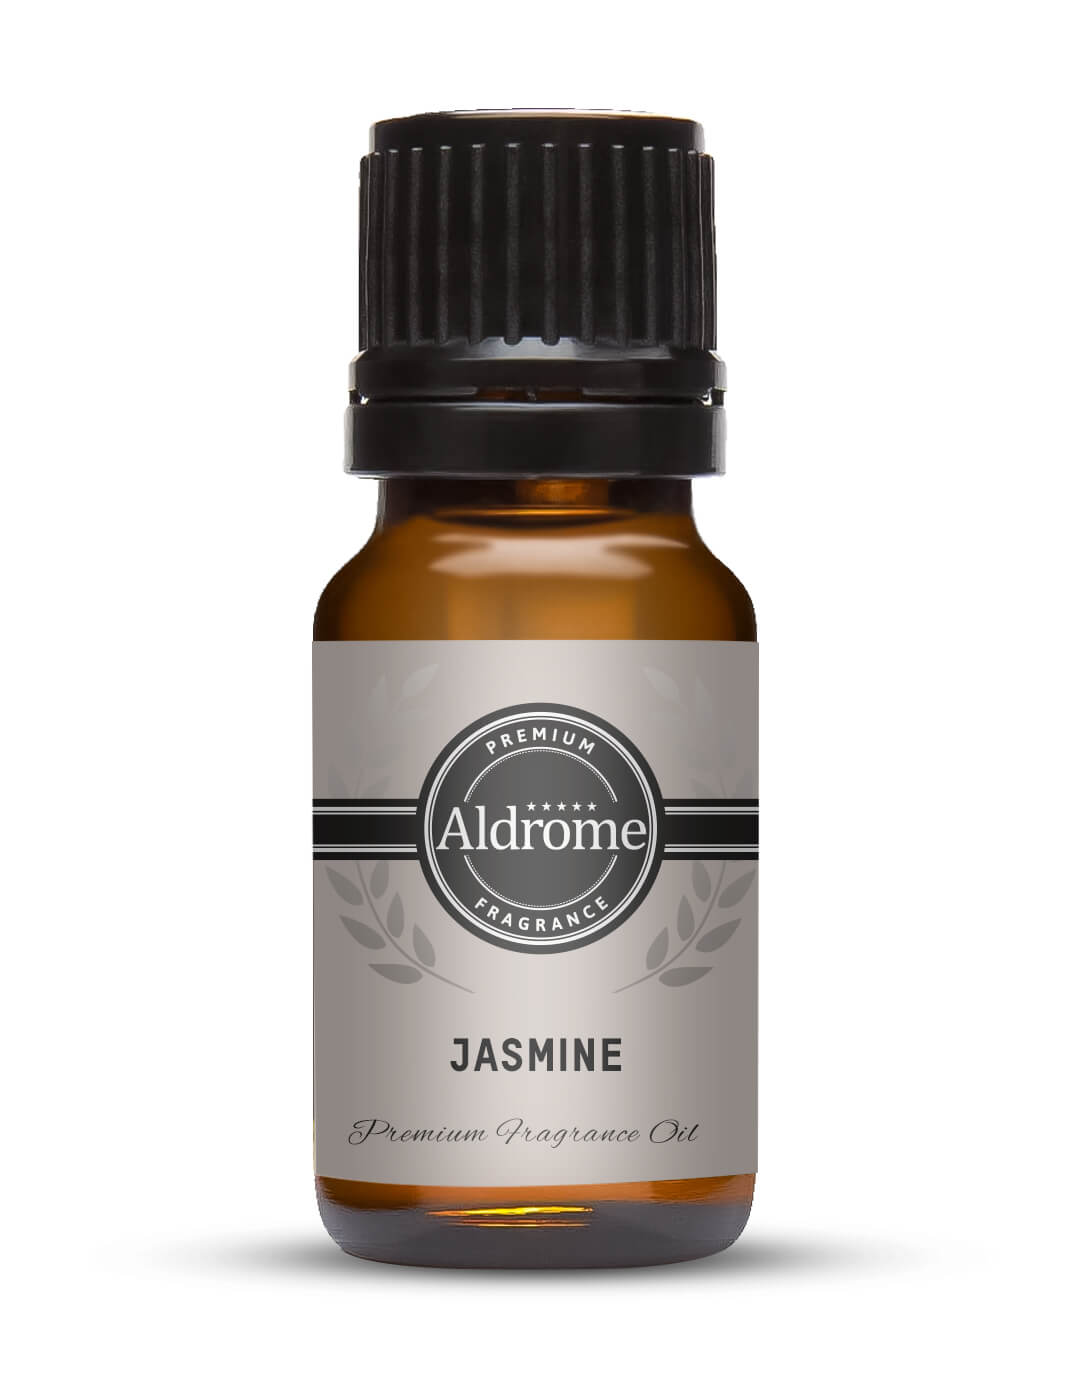 Buy Jasmine Fragrance Oil - 10ml at Best price | Aldrome Premium Fragrance Oil